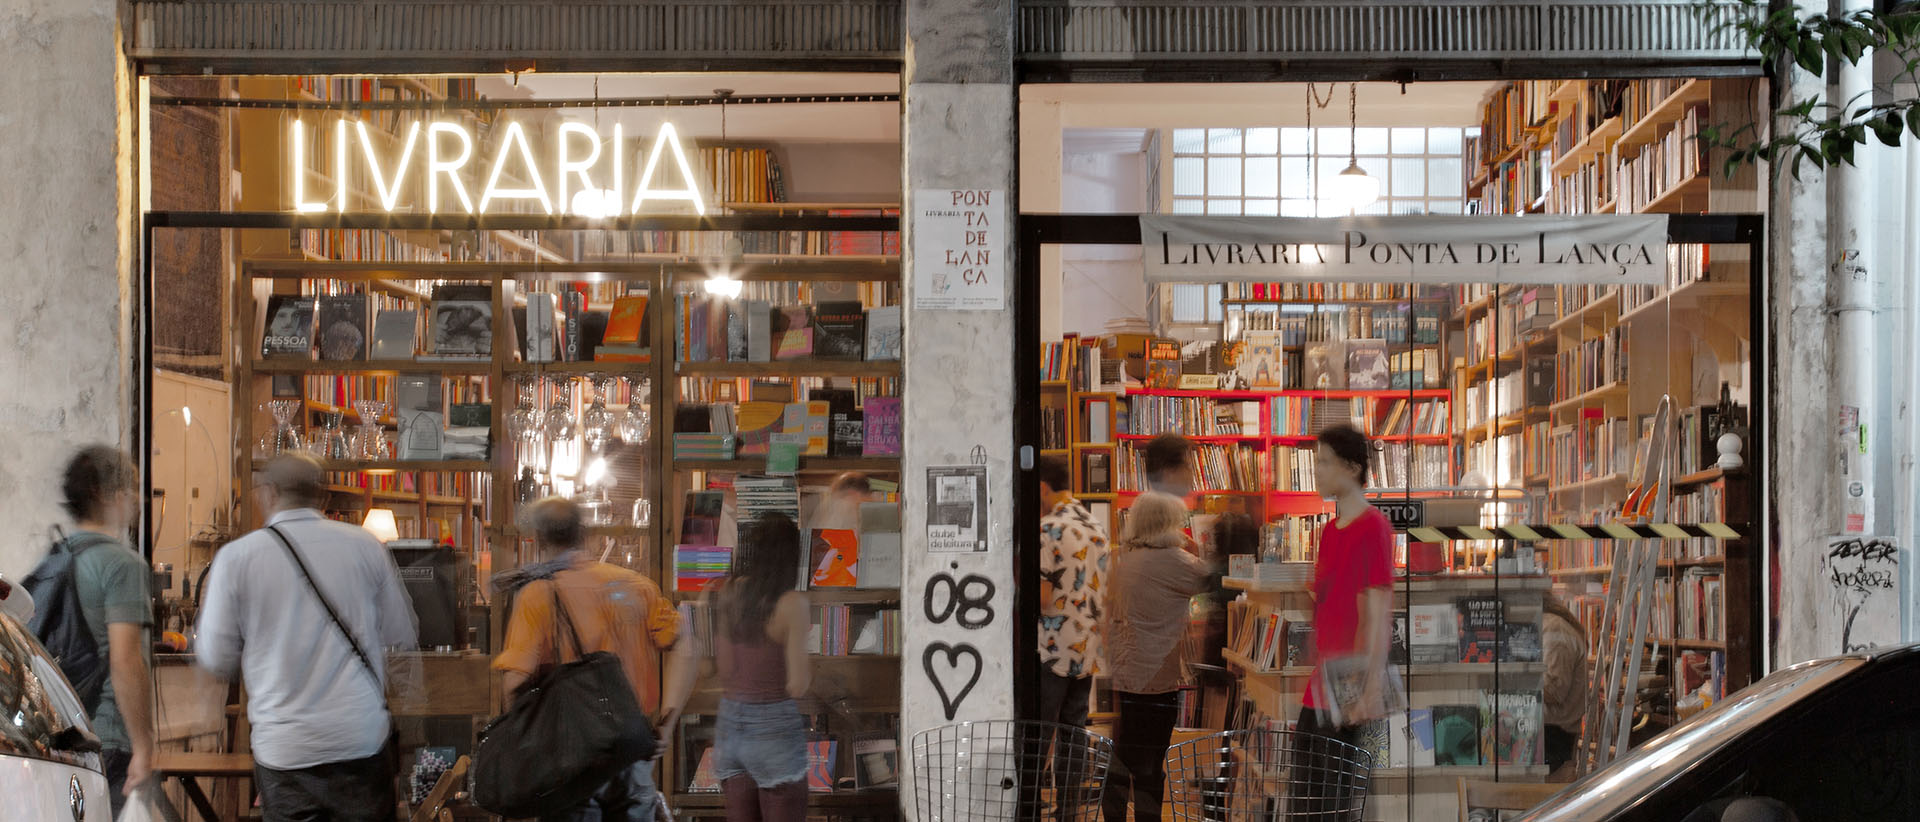 Fachada da Livraria Ponta de Lança, no bairro de Santa Cecília em São Paulo.